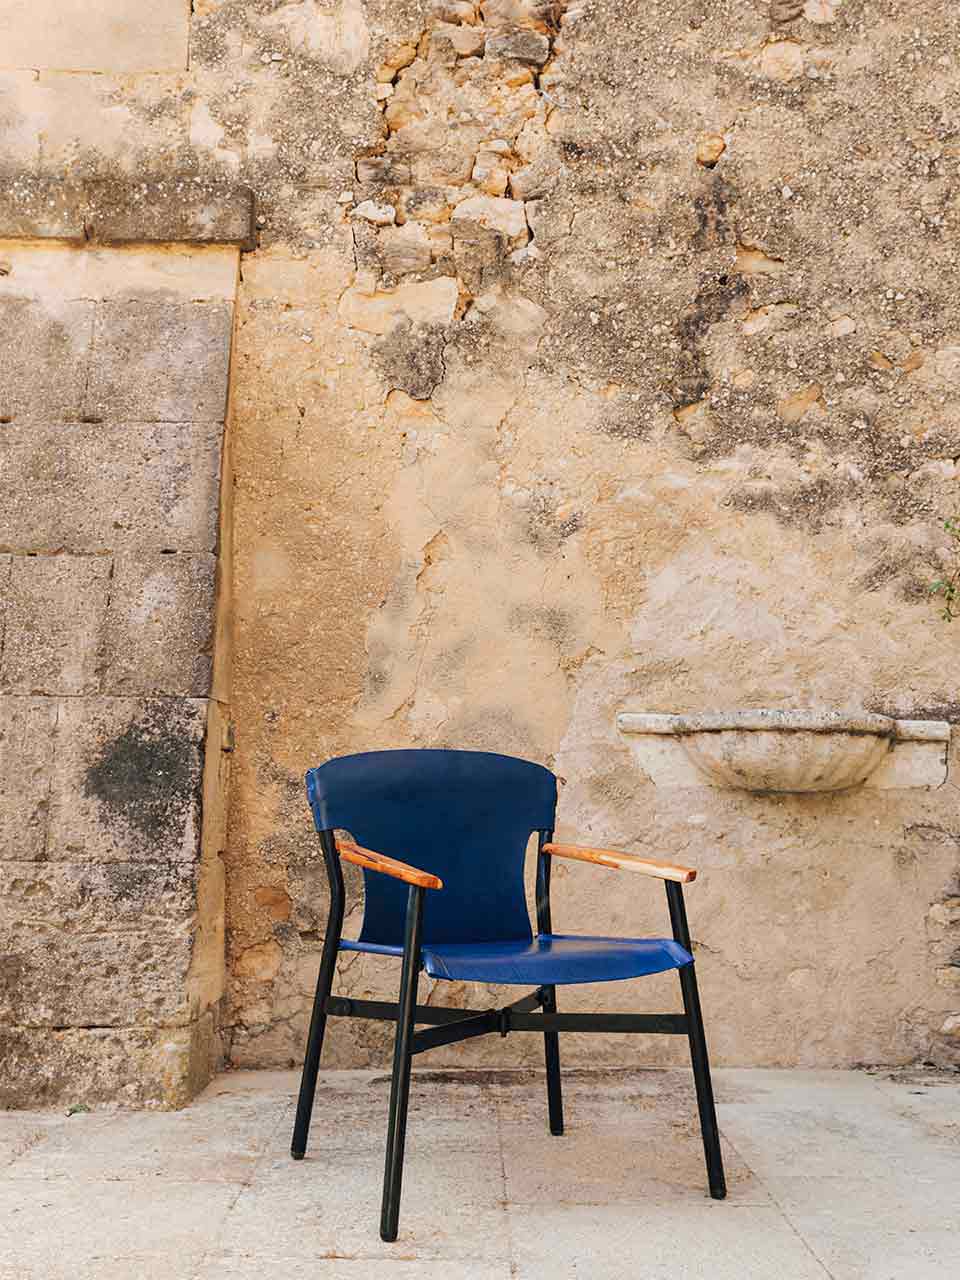 Maërl est un nouvel éditeur de mobilier made in France Son fauteuil pliant Galathée met en valeur le cuir tannage végétal tanné par Sovos Grosjean dans trois coloris exclusifs bleu vert rouge 2950€ prix boutique